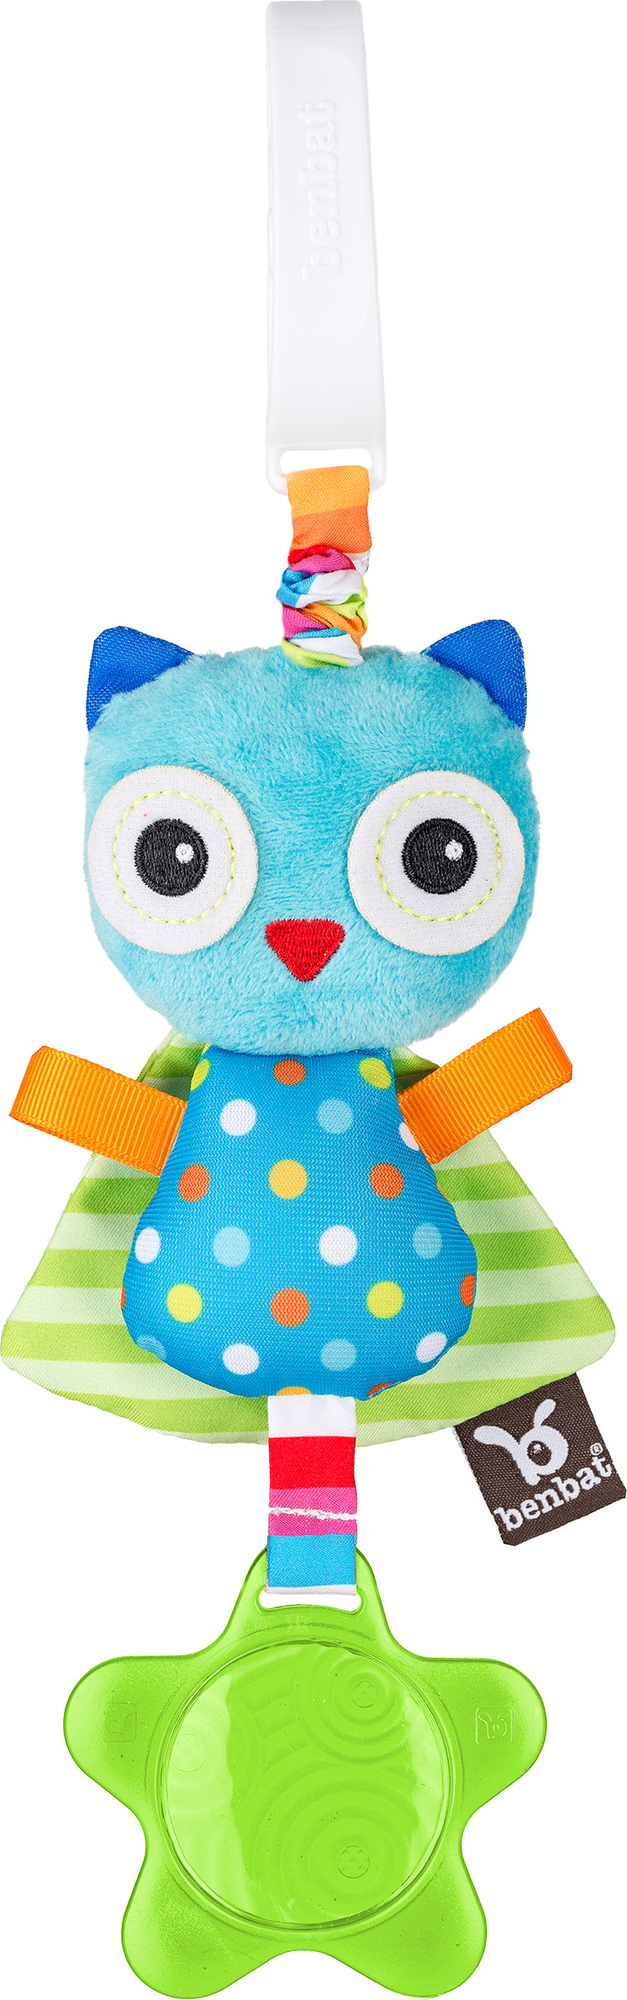 BenBat Závěsná hračka, Owl